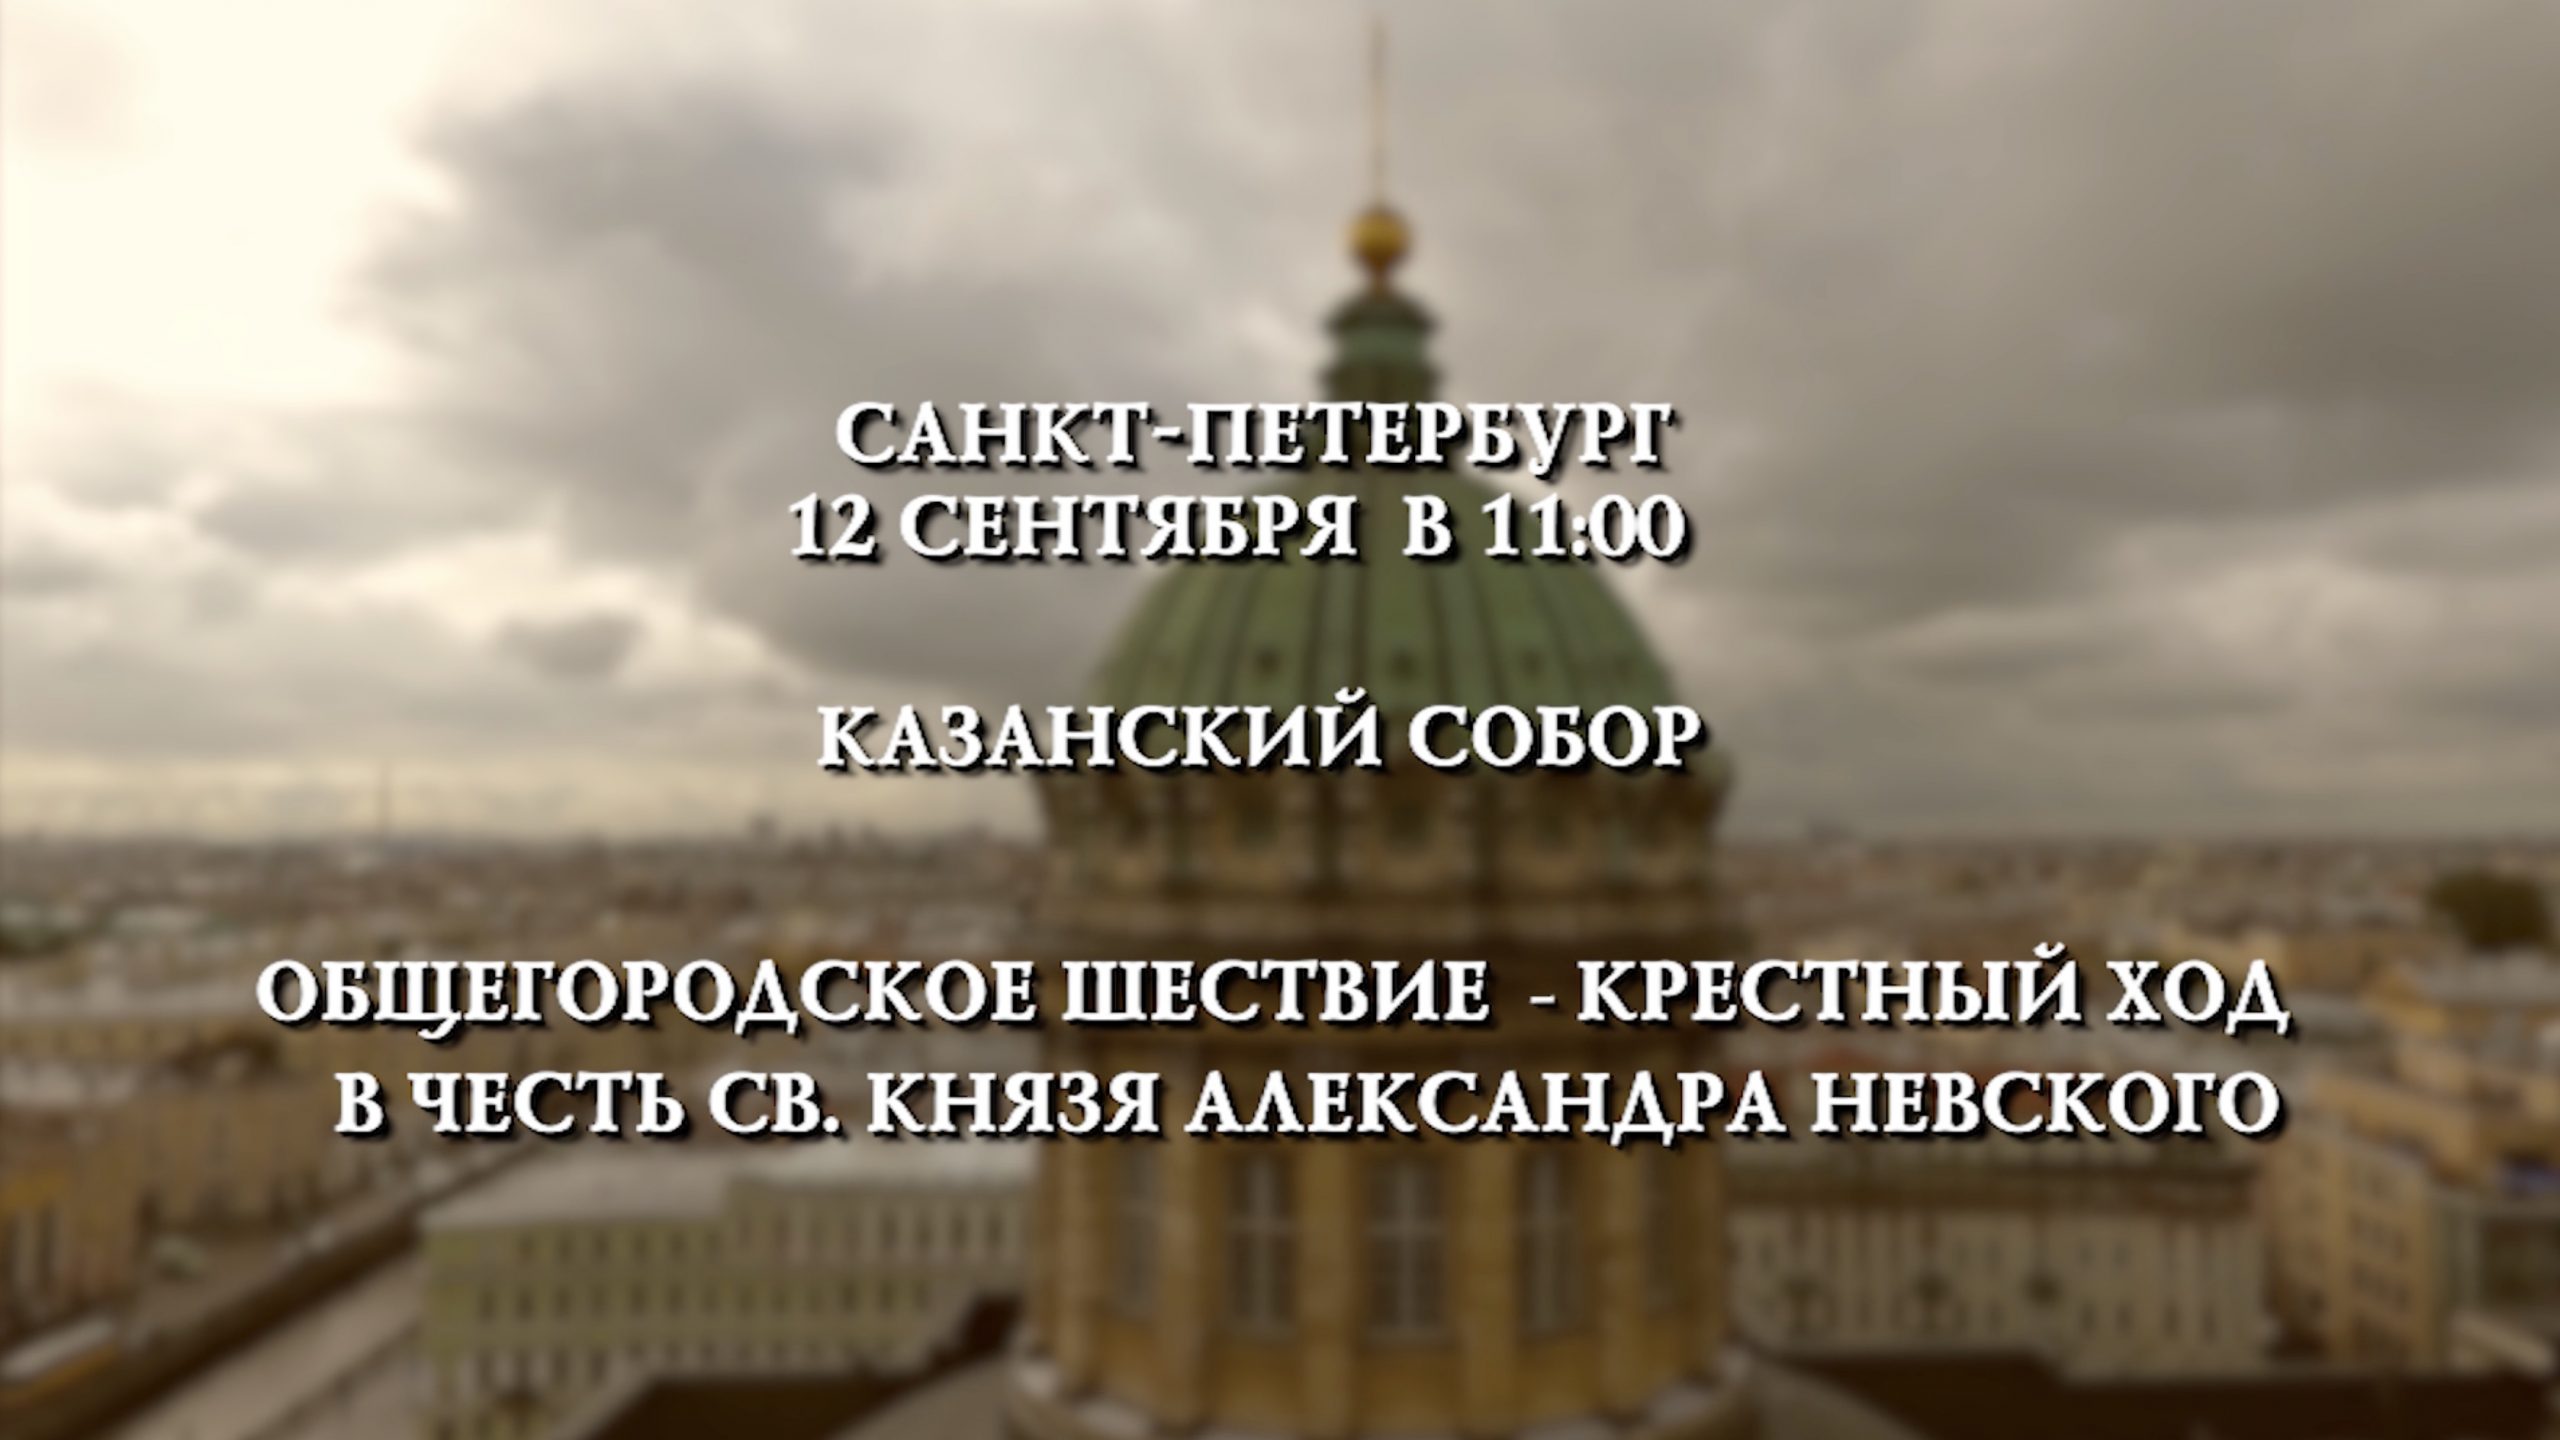 День перенесения мощей святого благоверного князя Александра Невского